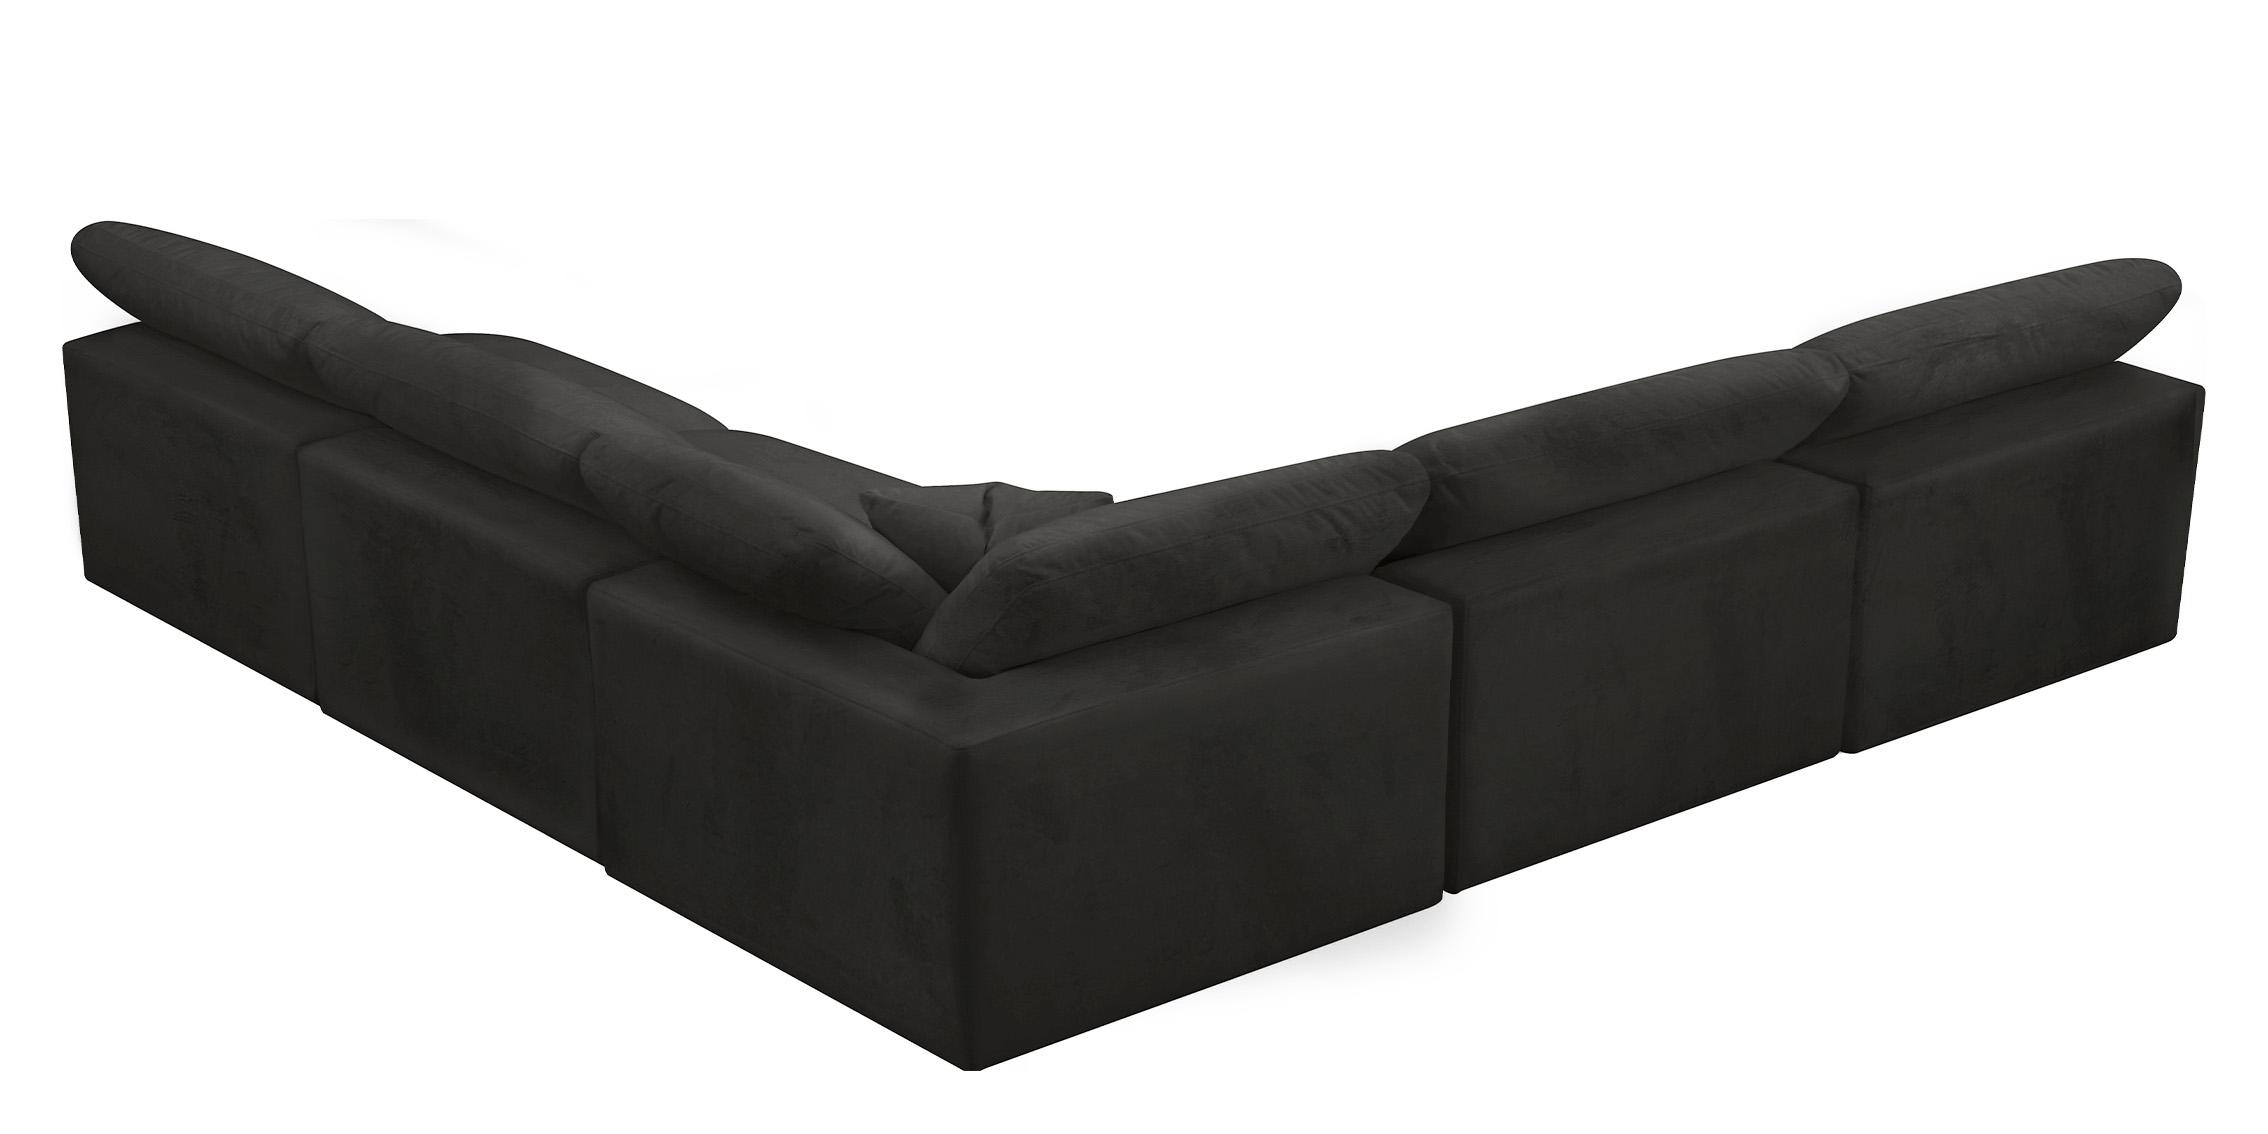 

    
Meridian Furniture 634Black-Sec5B Modular Sectional Sofa Black 634Black-Sec5B
